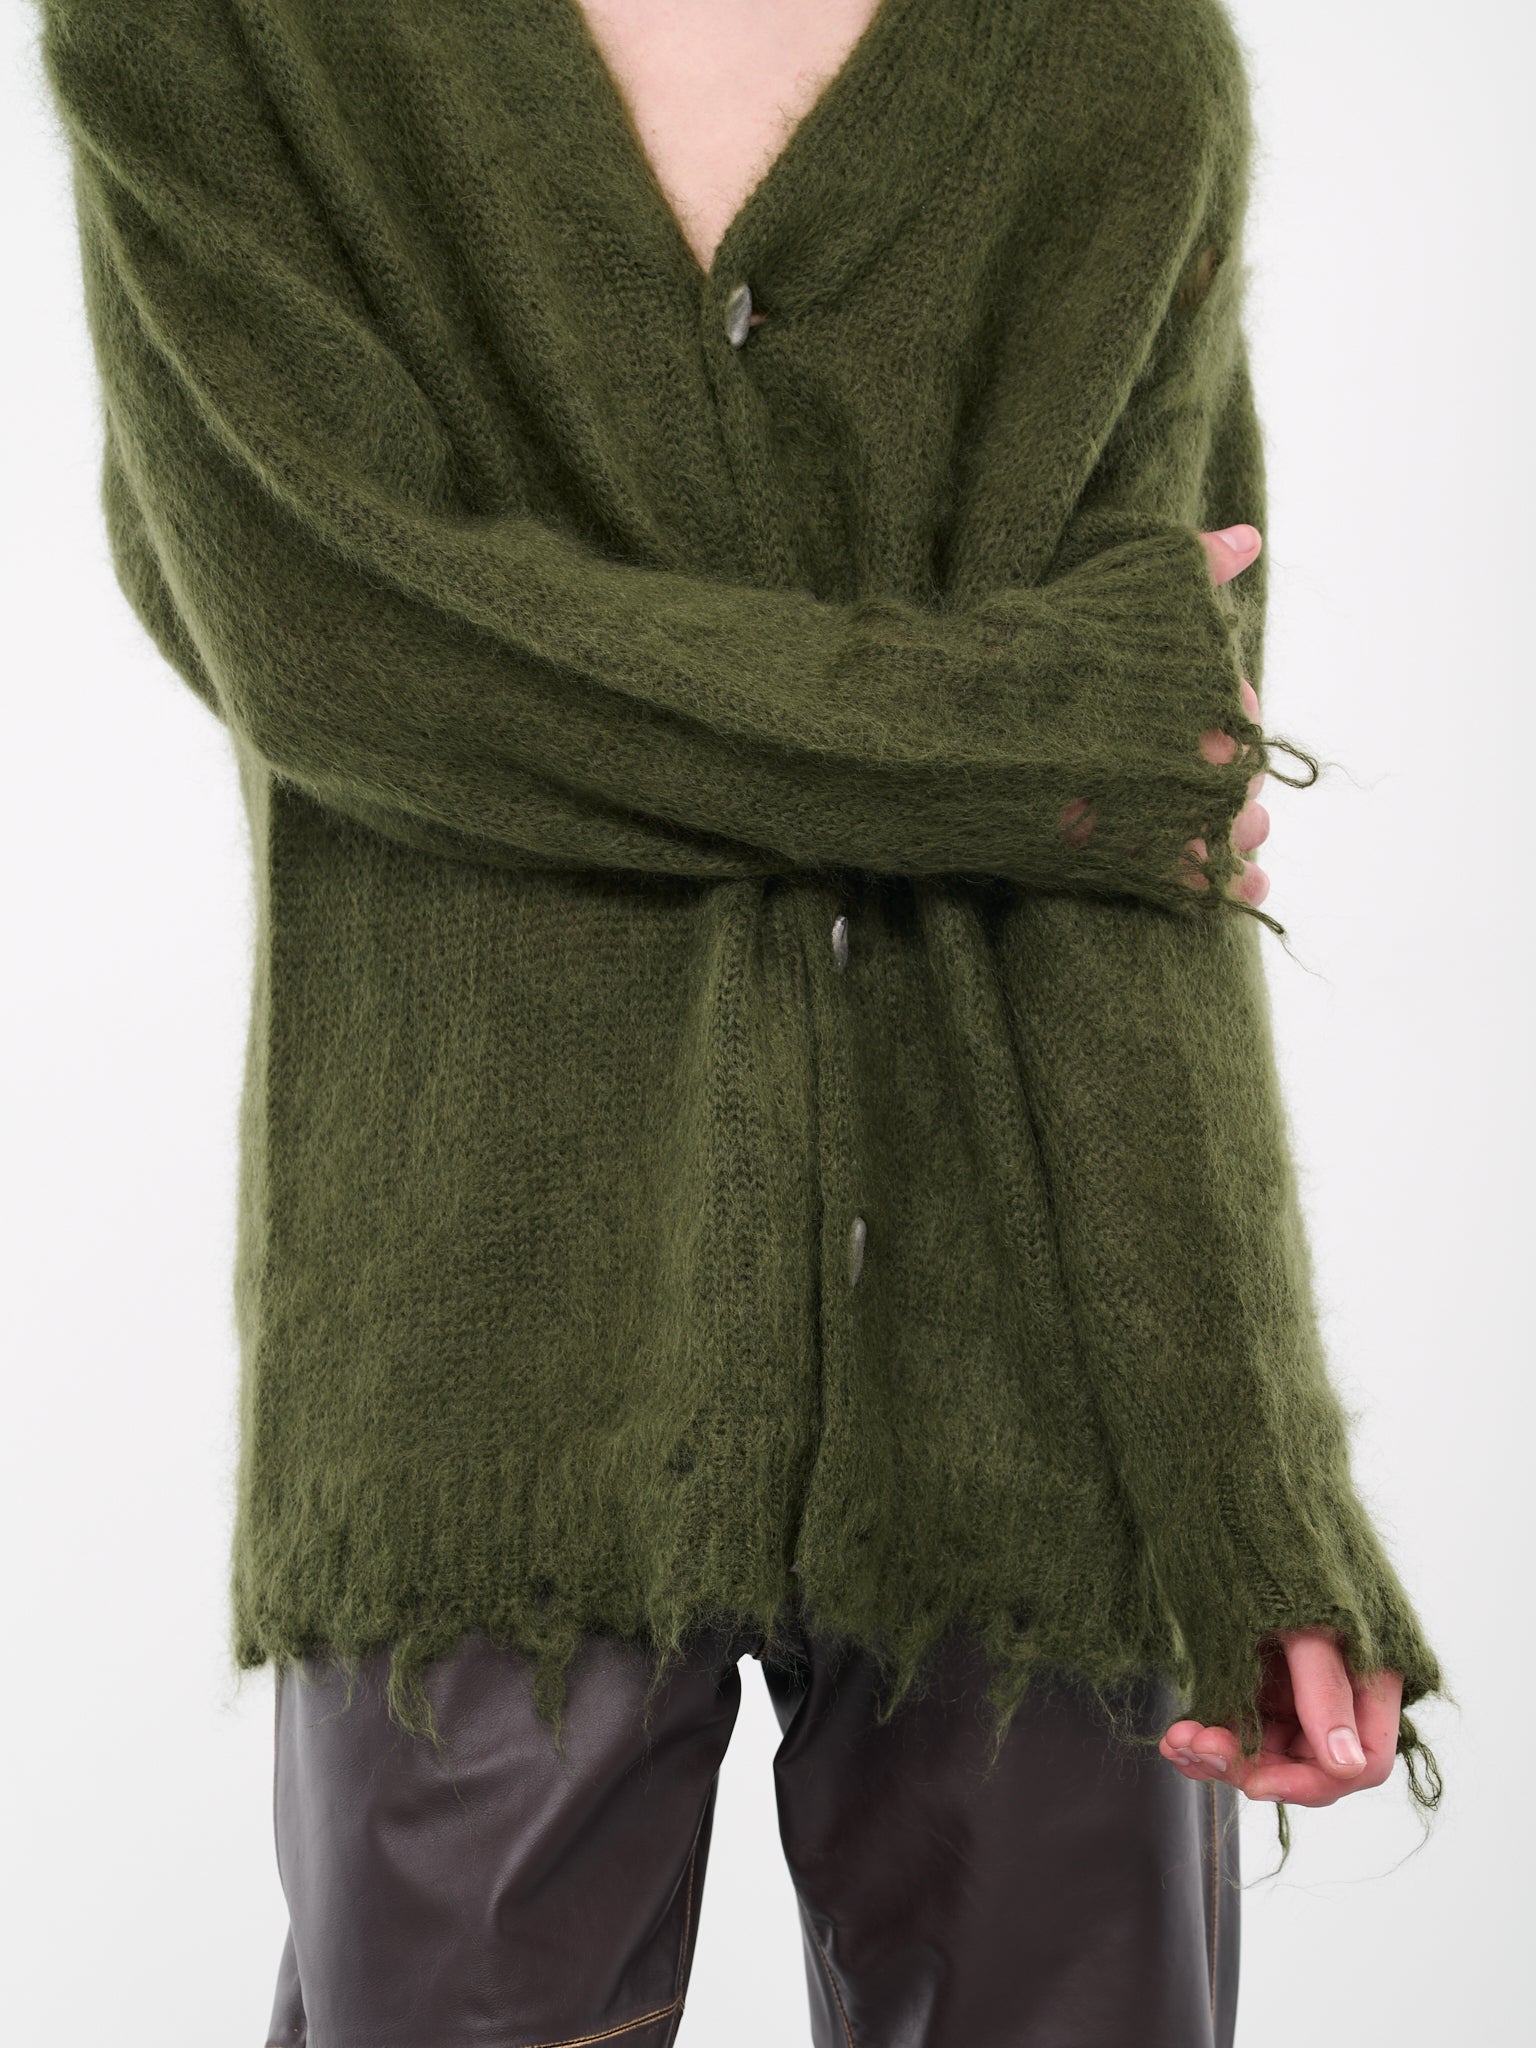 Distressed Knit Cardigan (KT01-KHAKI)